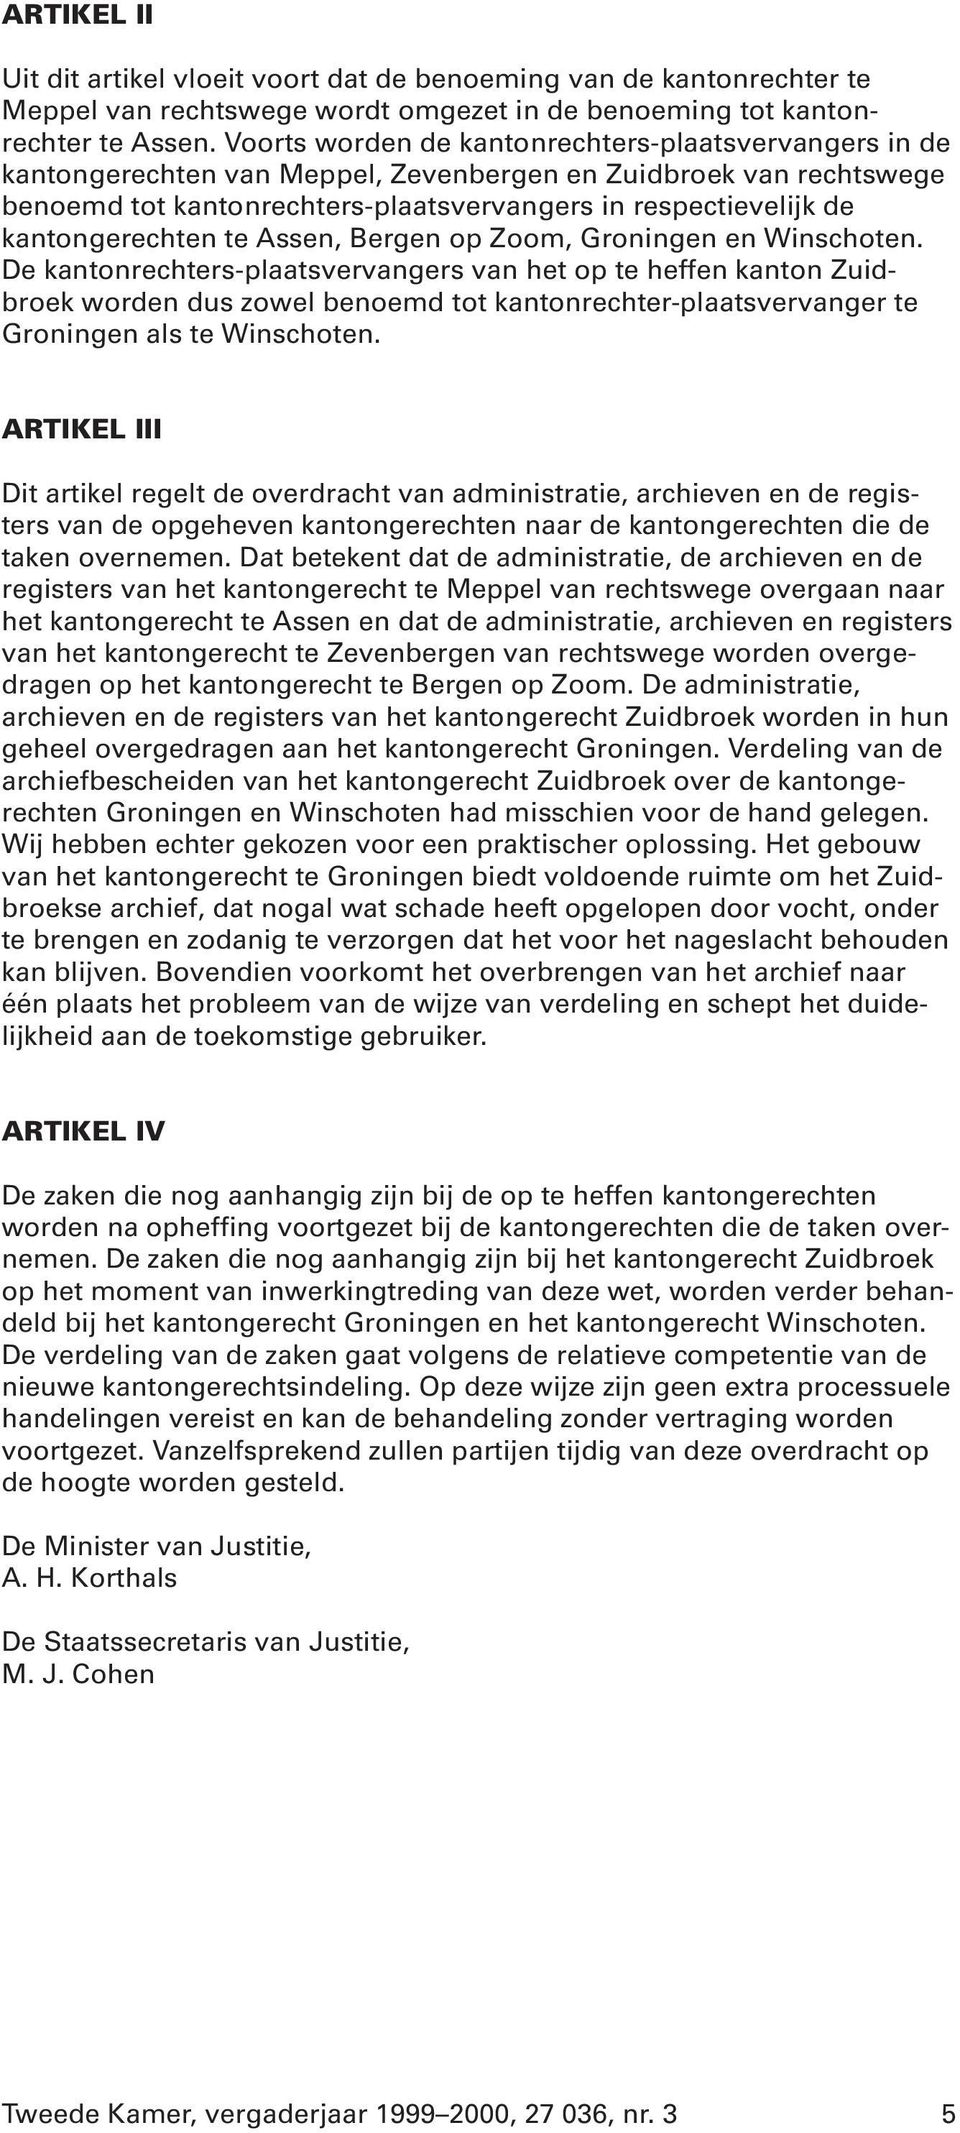 kantongerechten te Assen, Bergen op Zoom, Groningen en Winschoten.